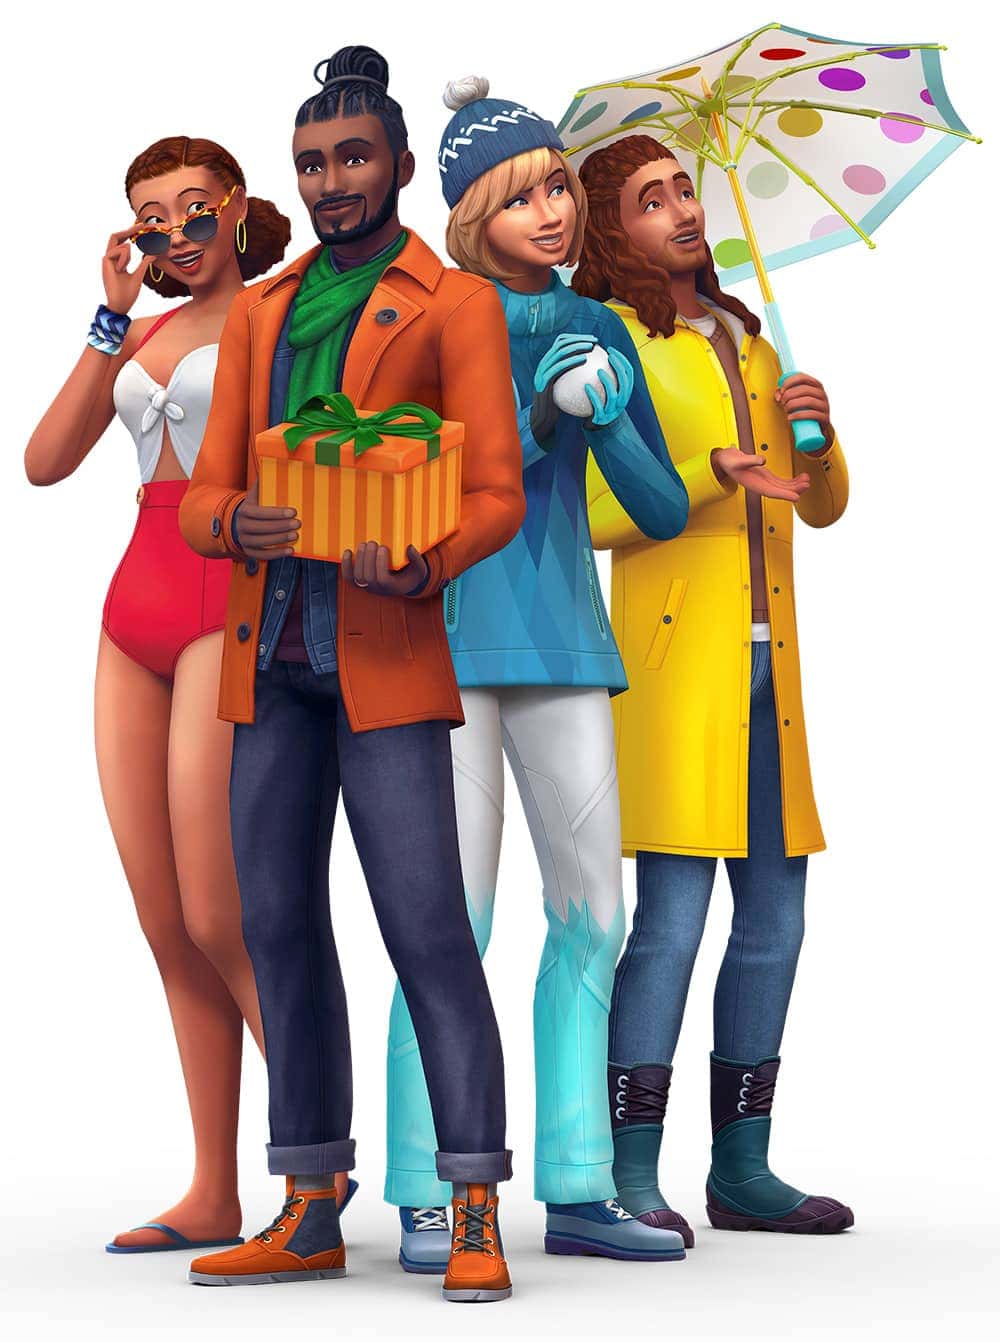 Uitbreidingspakket De Sims 4 Jaargetijden (Seizoenen)